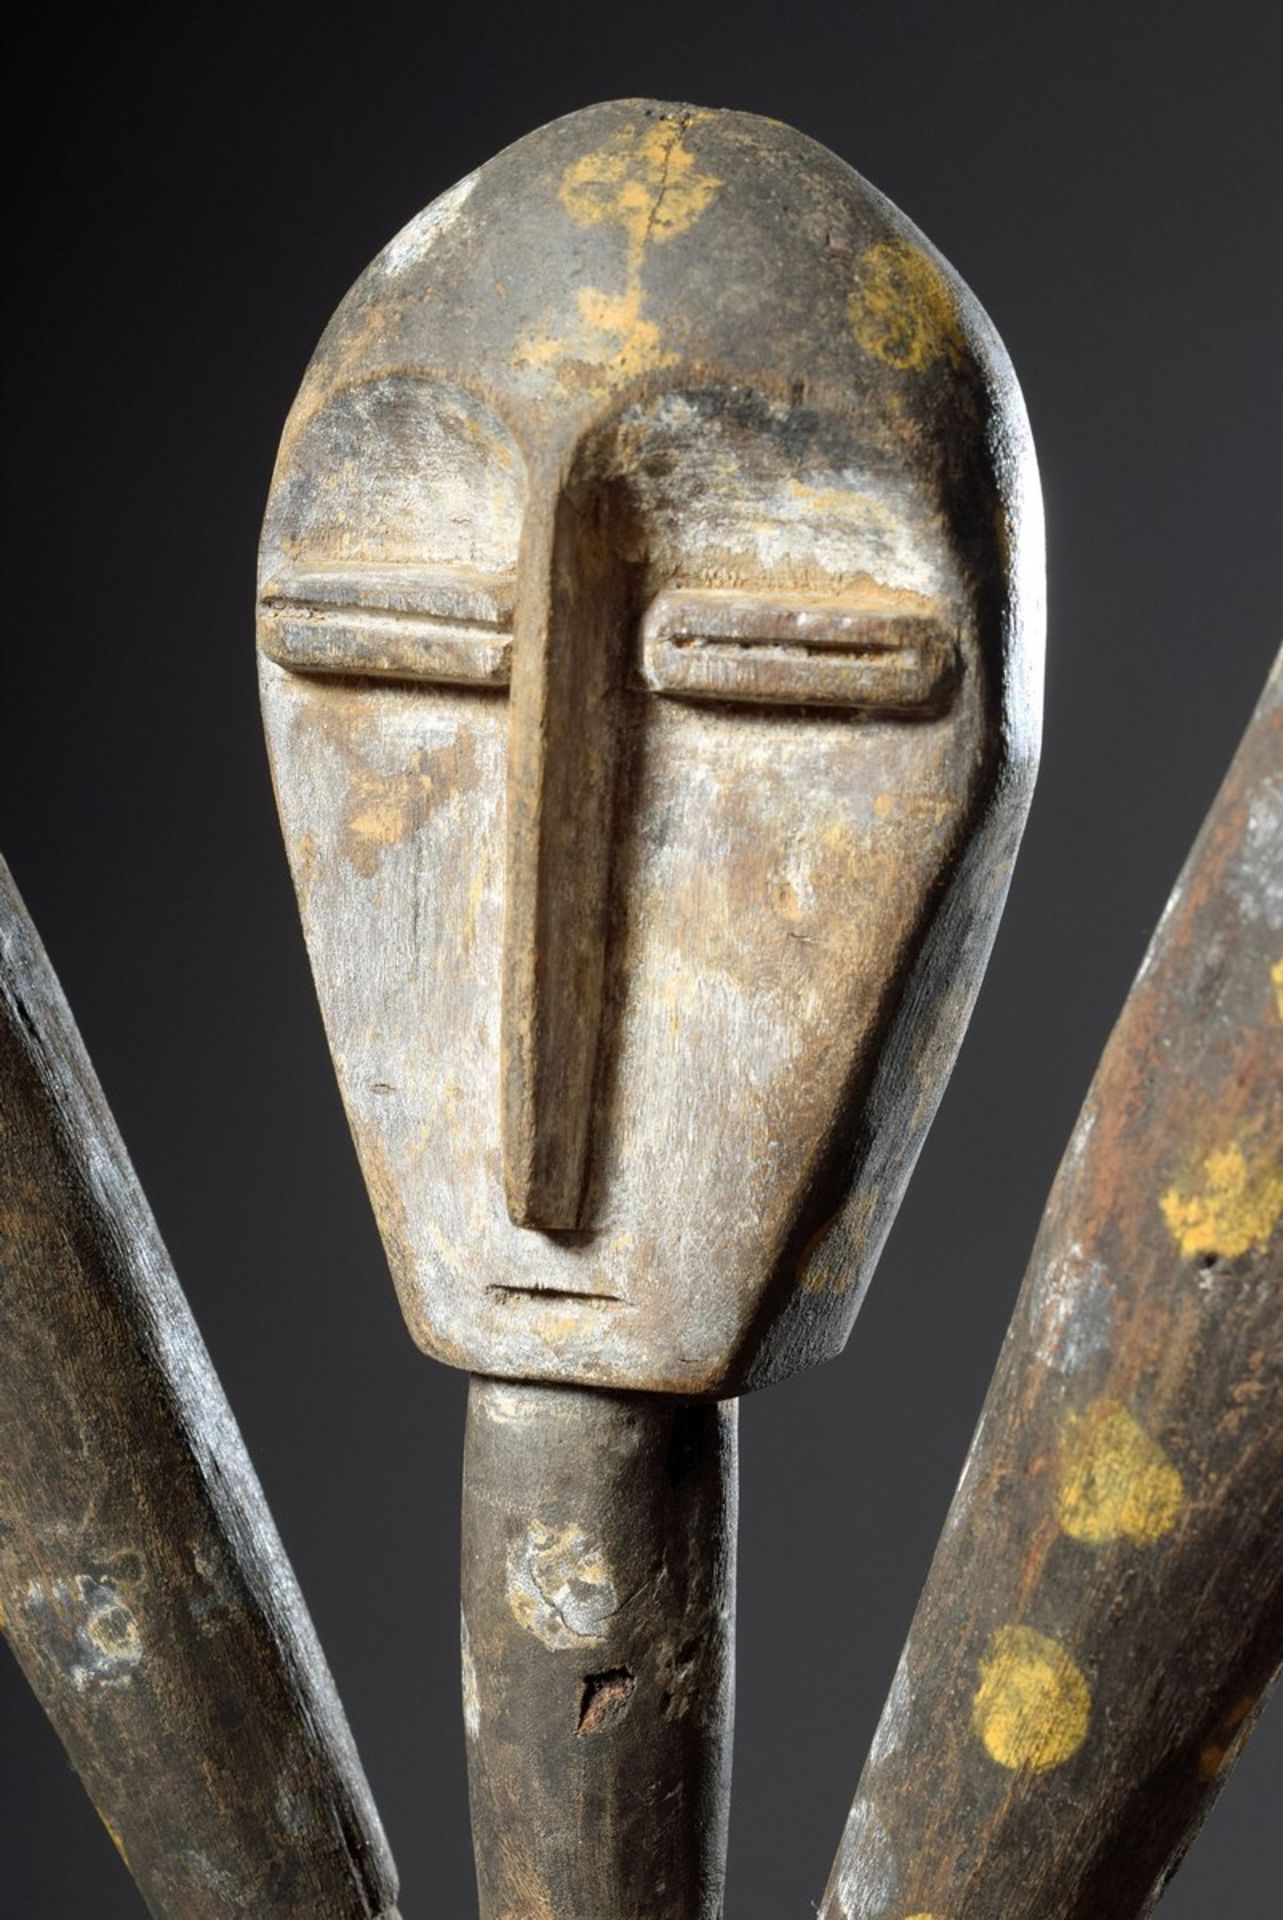 Large Lengola figure "Umbanga Nyama" representing the ancestor "Suway" (the large statues, also cal - Image 5 of 5